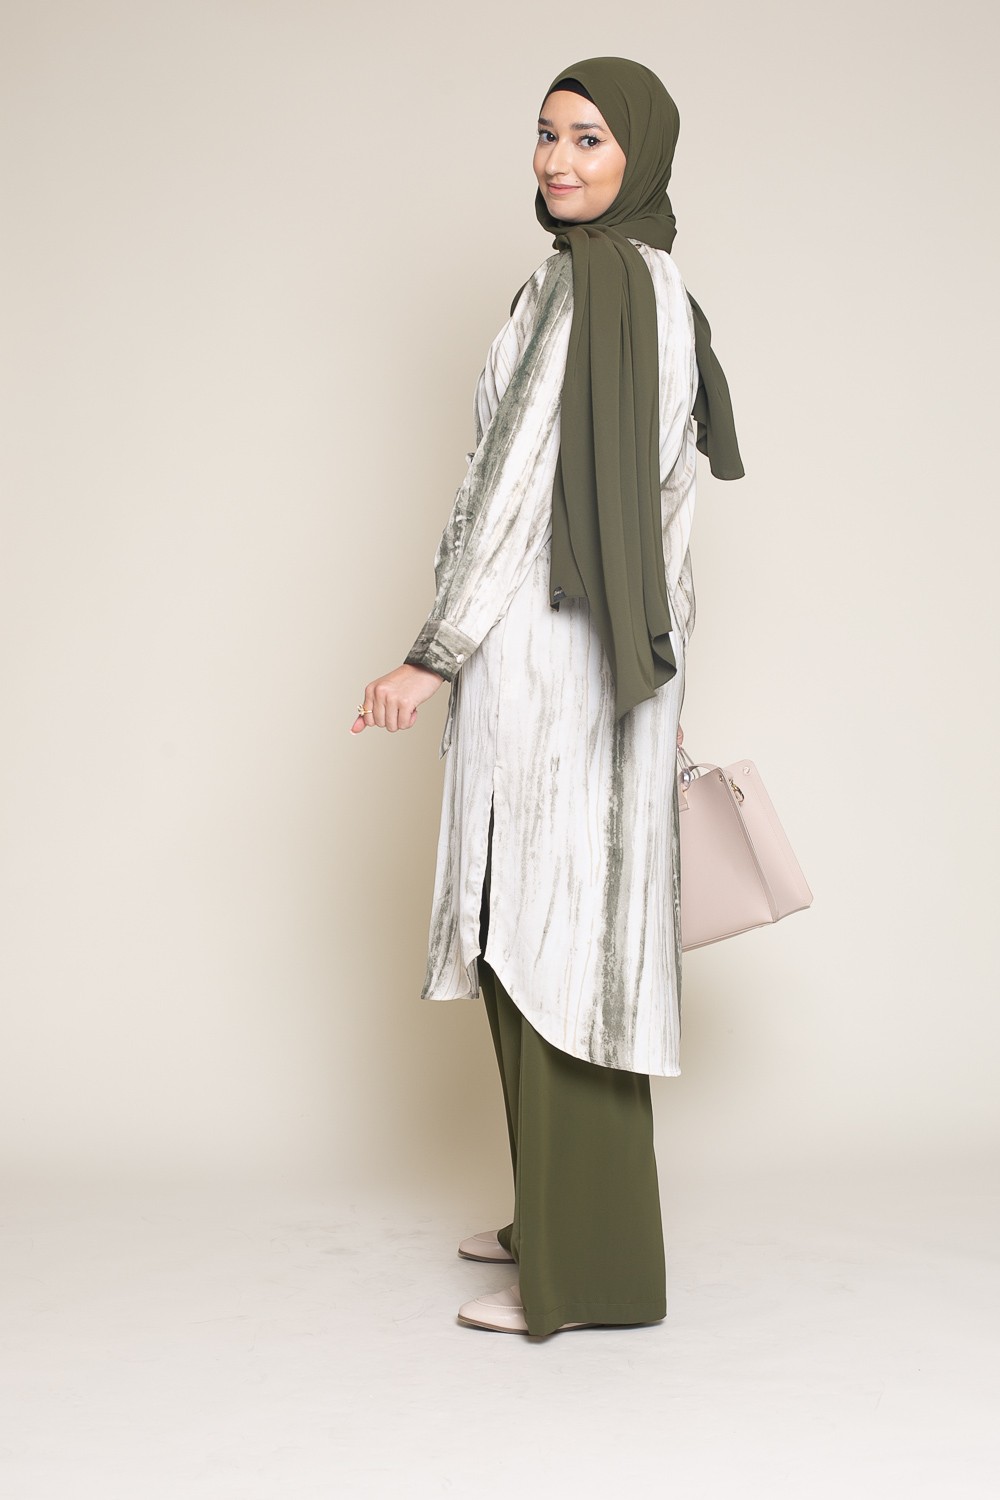 tunique longue chic et classe pour femme boutique musulmane moderne